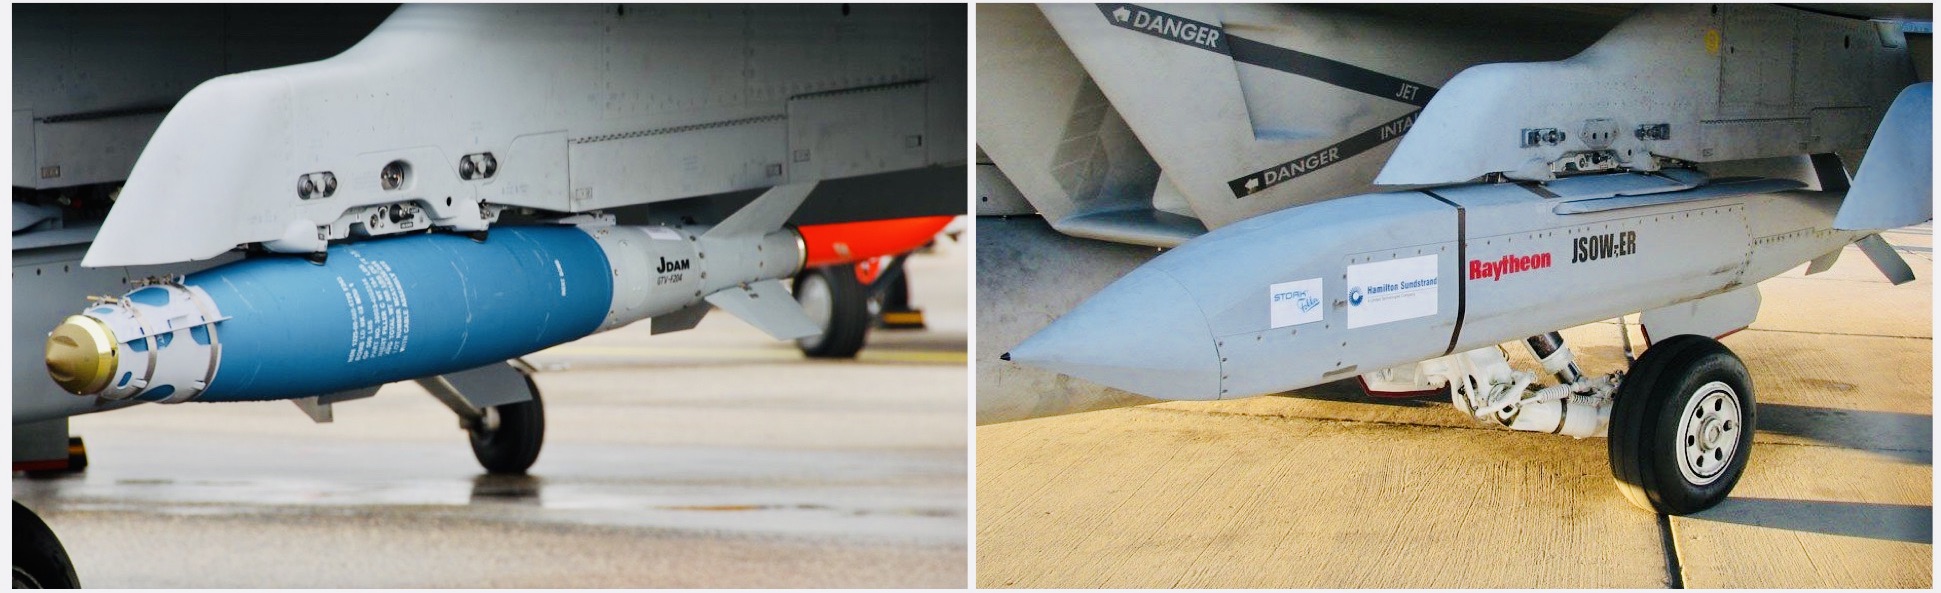 A JDAM (balra) és a JSOW (jobbra) GPS vezérlésű siklóbombák. A műholdvezérlésű, nagy pontossággal célra irányítható támadófegyvereket nem hozzák zavarba a kedvezőtlen időjárási körülmények vagy a rossz látási viszonyok.